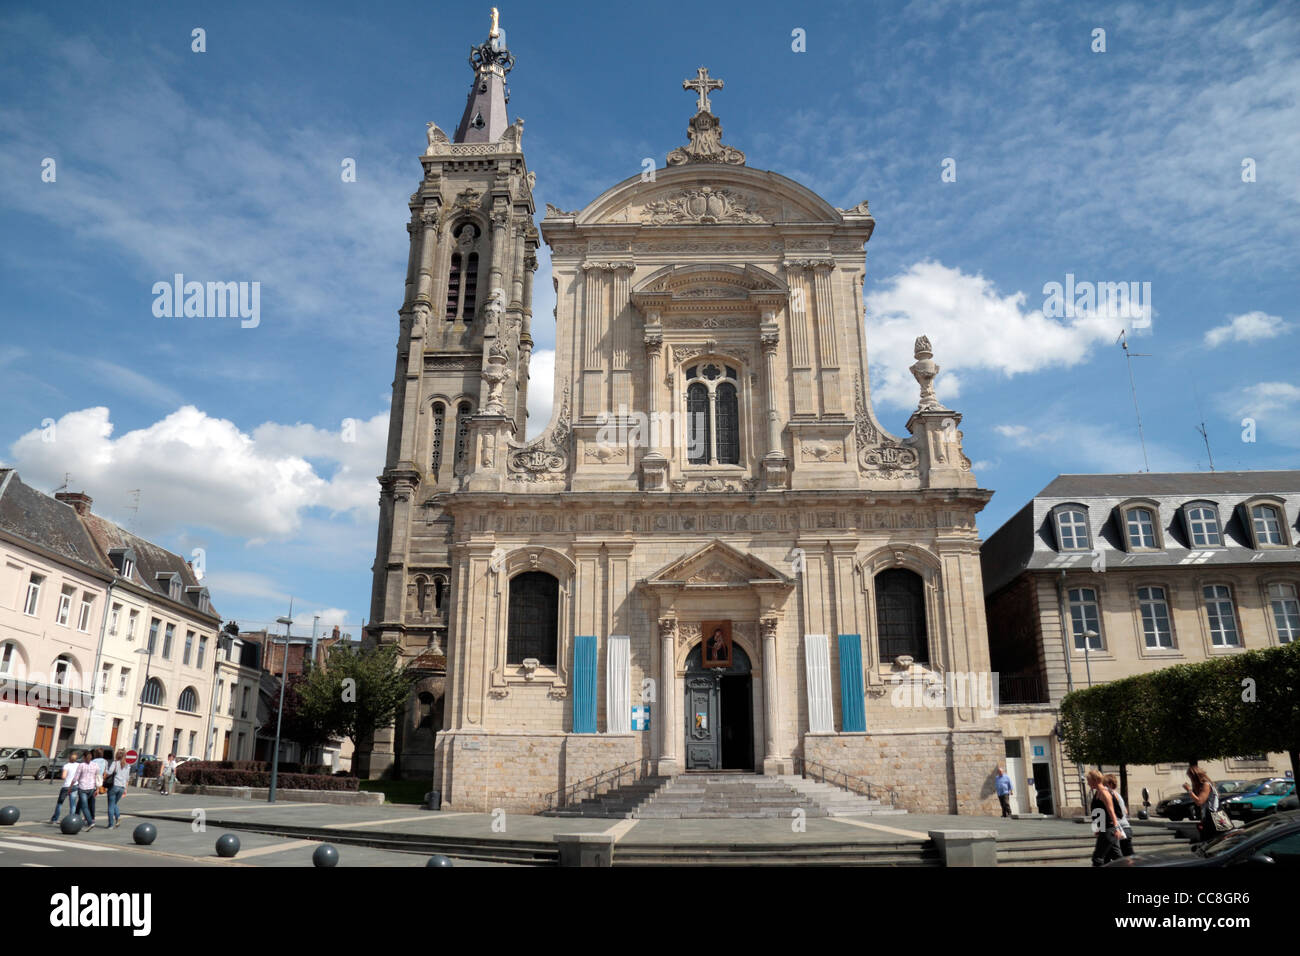 Die Cathédrale Notre-Dame-de-Grâce de Cambrai (Kathedrale unserer lieben Frau von n-e), Cambrai, Nord-Pas-de-Calais, Frankreich. Stockfoto